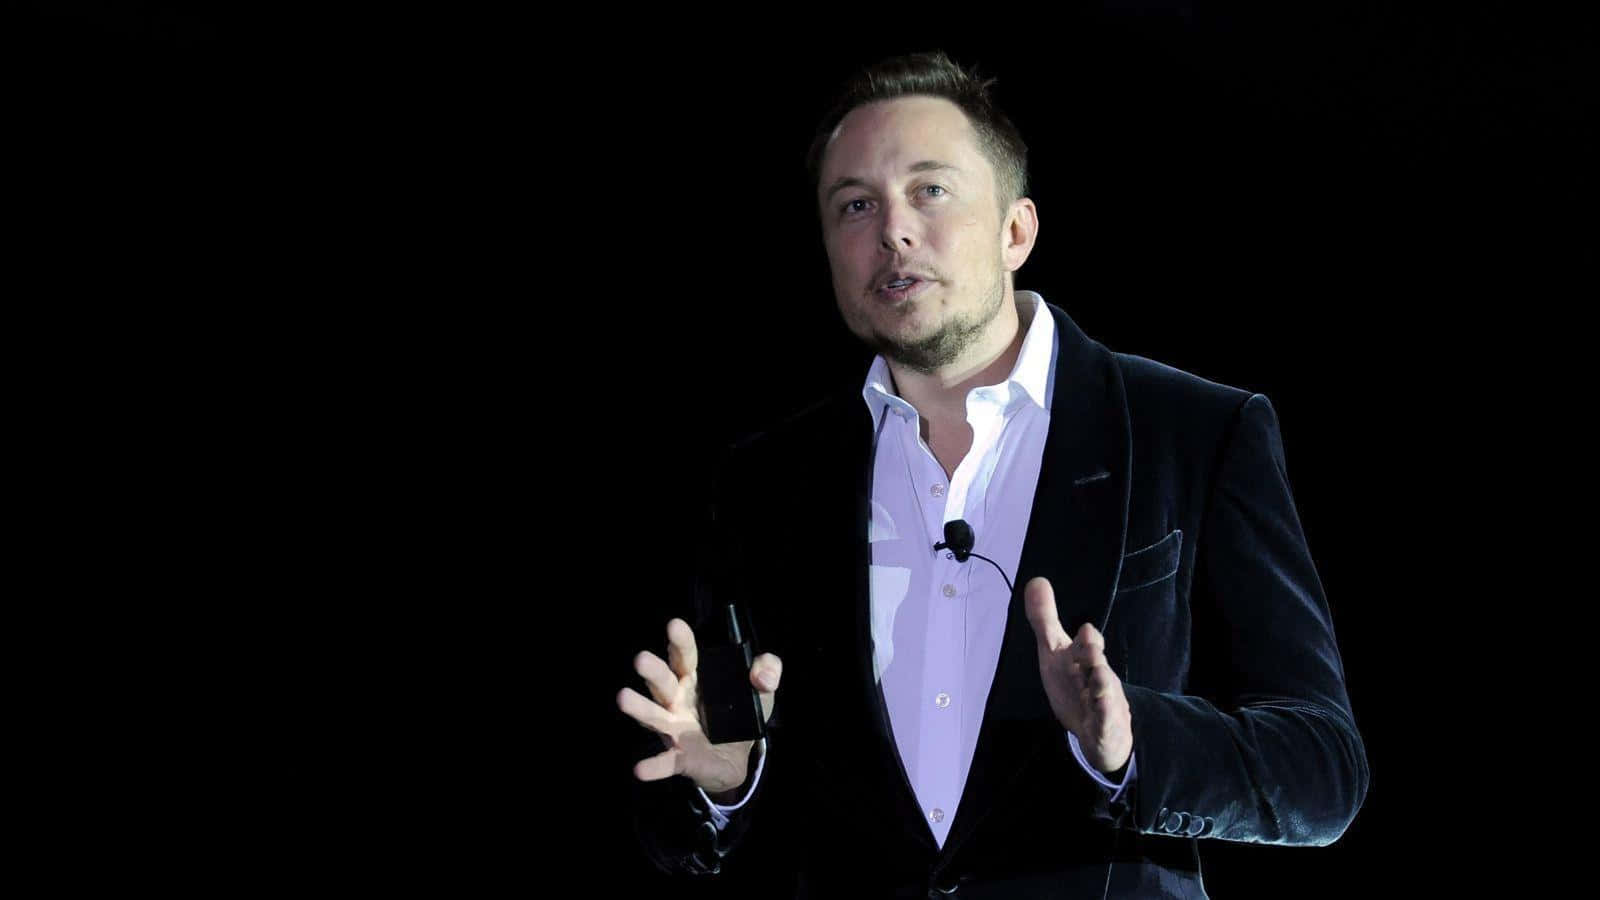 Entrepreneur and innovator Elon Musk